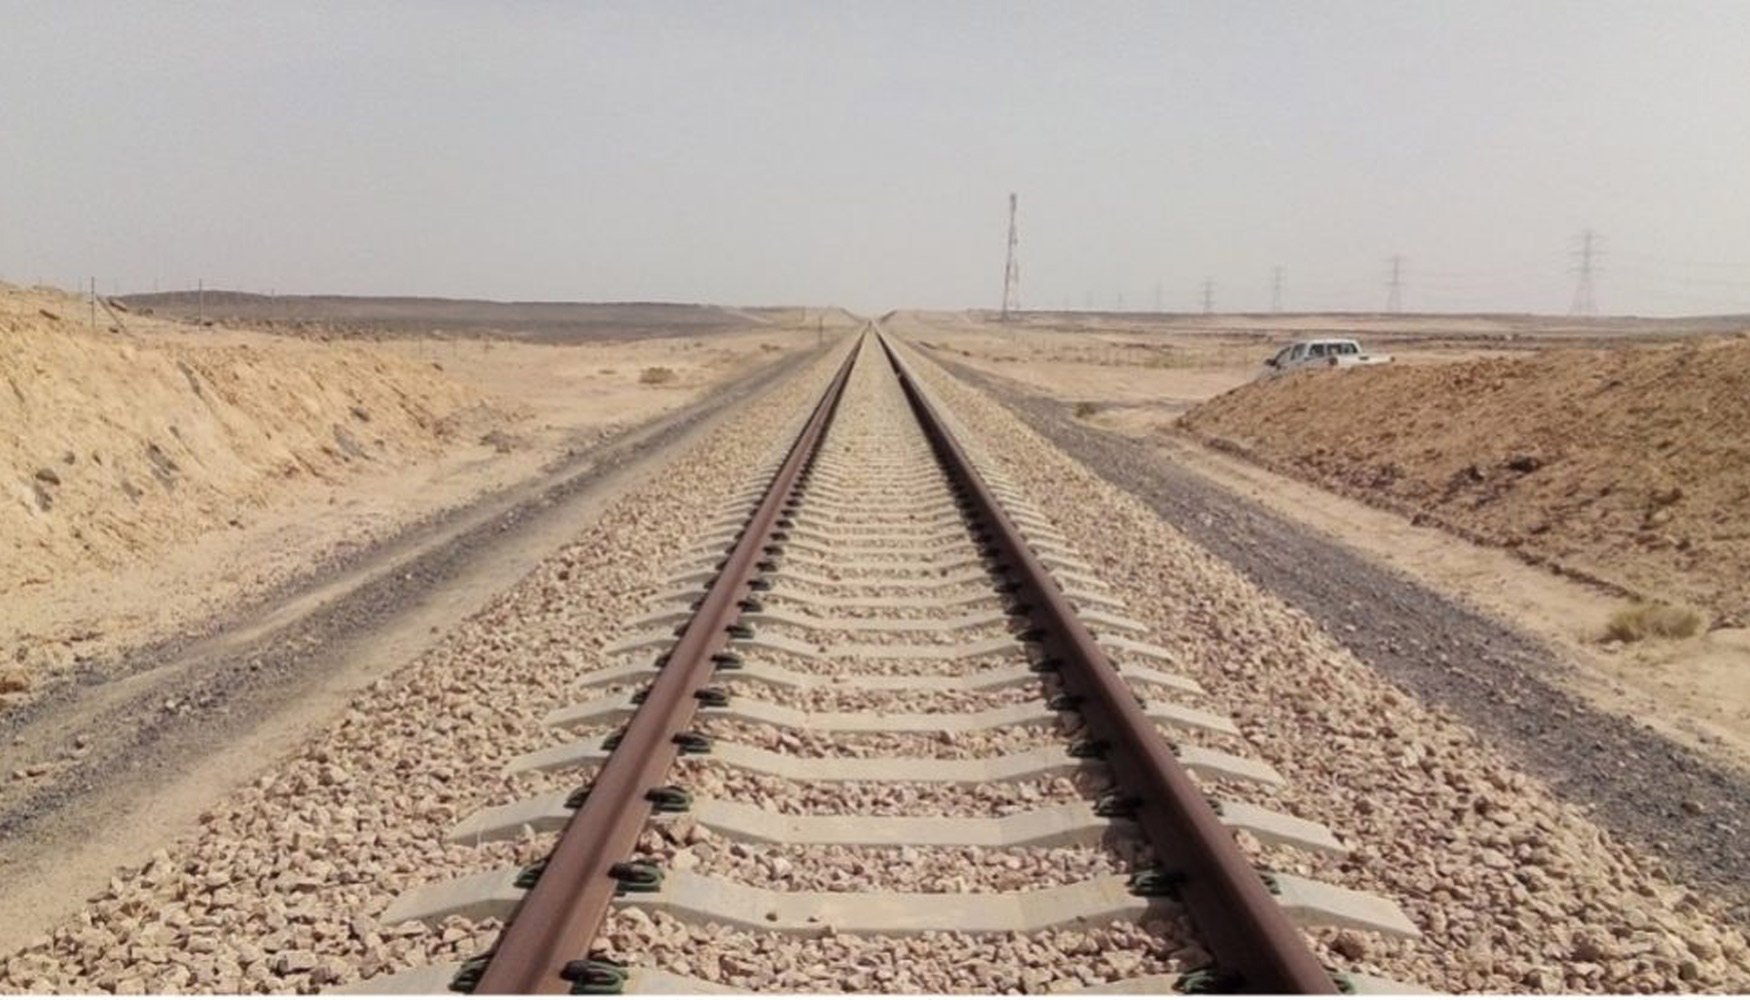 Distante reserva Dialecto Intecsa-Inarsa obtiene un contrato para evitar inundaciones en las vías  ferroviarias de Arabia Saudí - Obras públicas